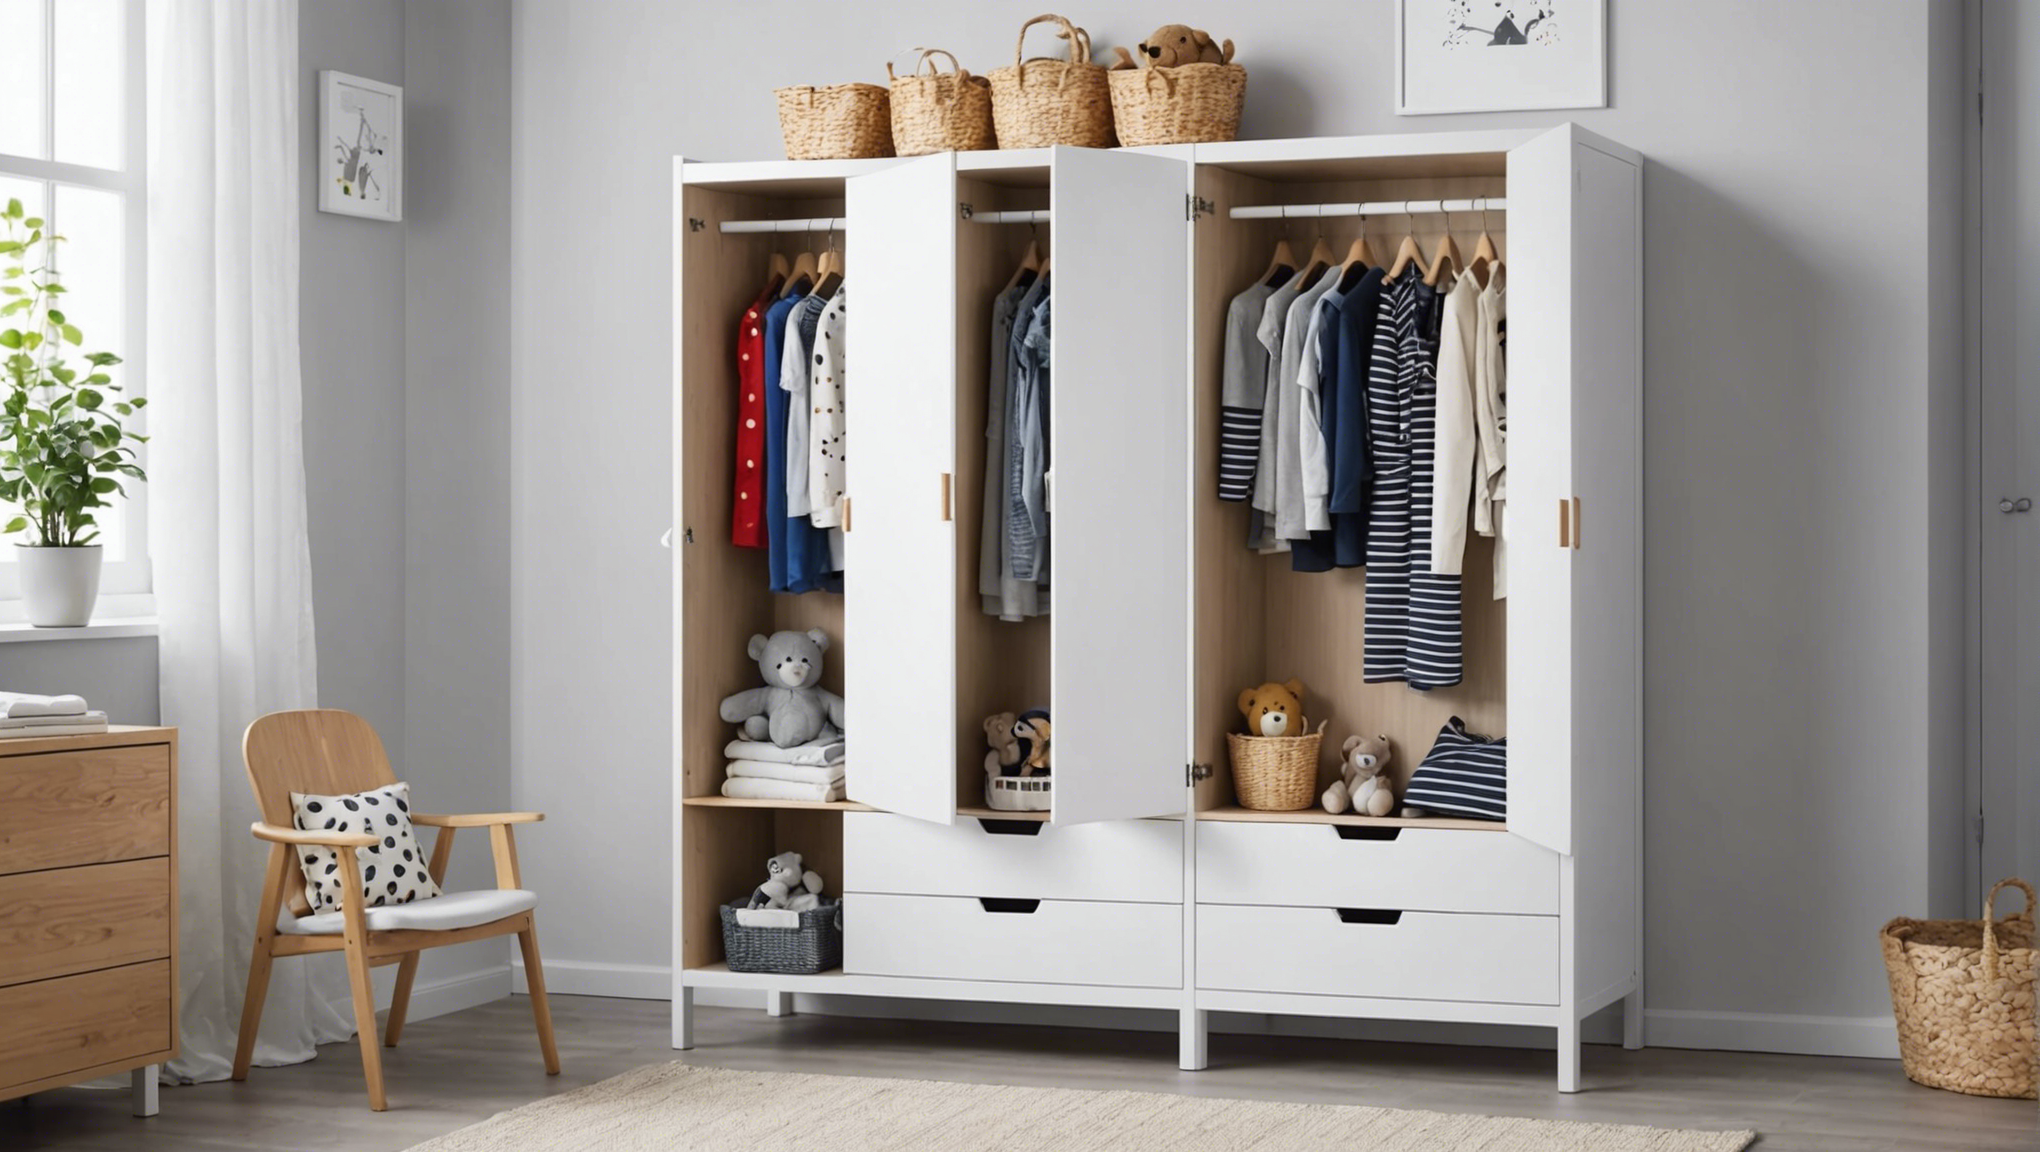 découvrez les avantages de choisir l'armoire bébé d'ikea pour aménager la chambre de votre enfant avec style et praticité.